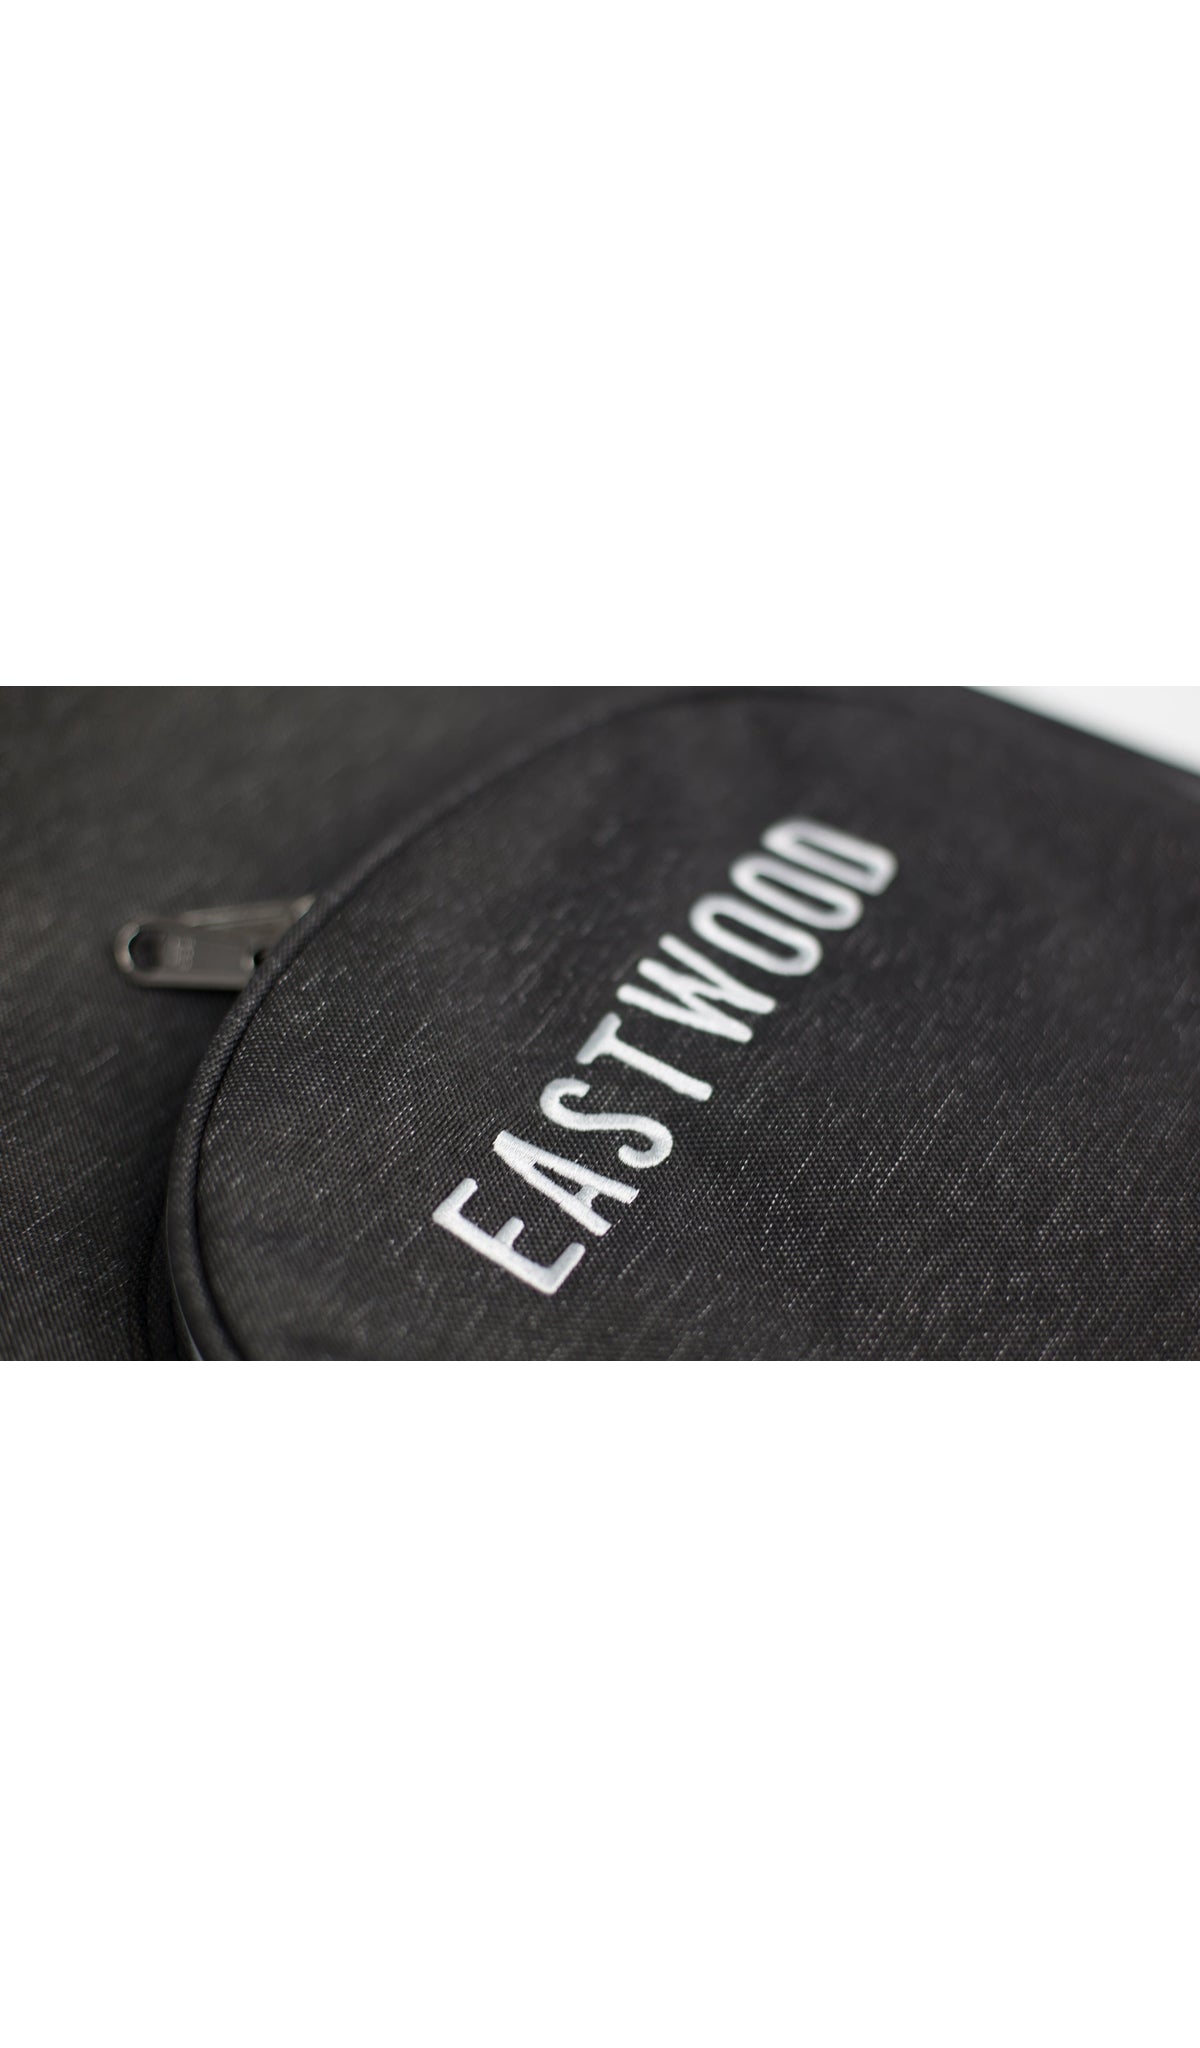 Eastwood Guitars Eastwood DLX Gig Bag Standard Guitar